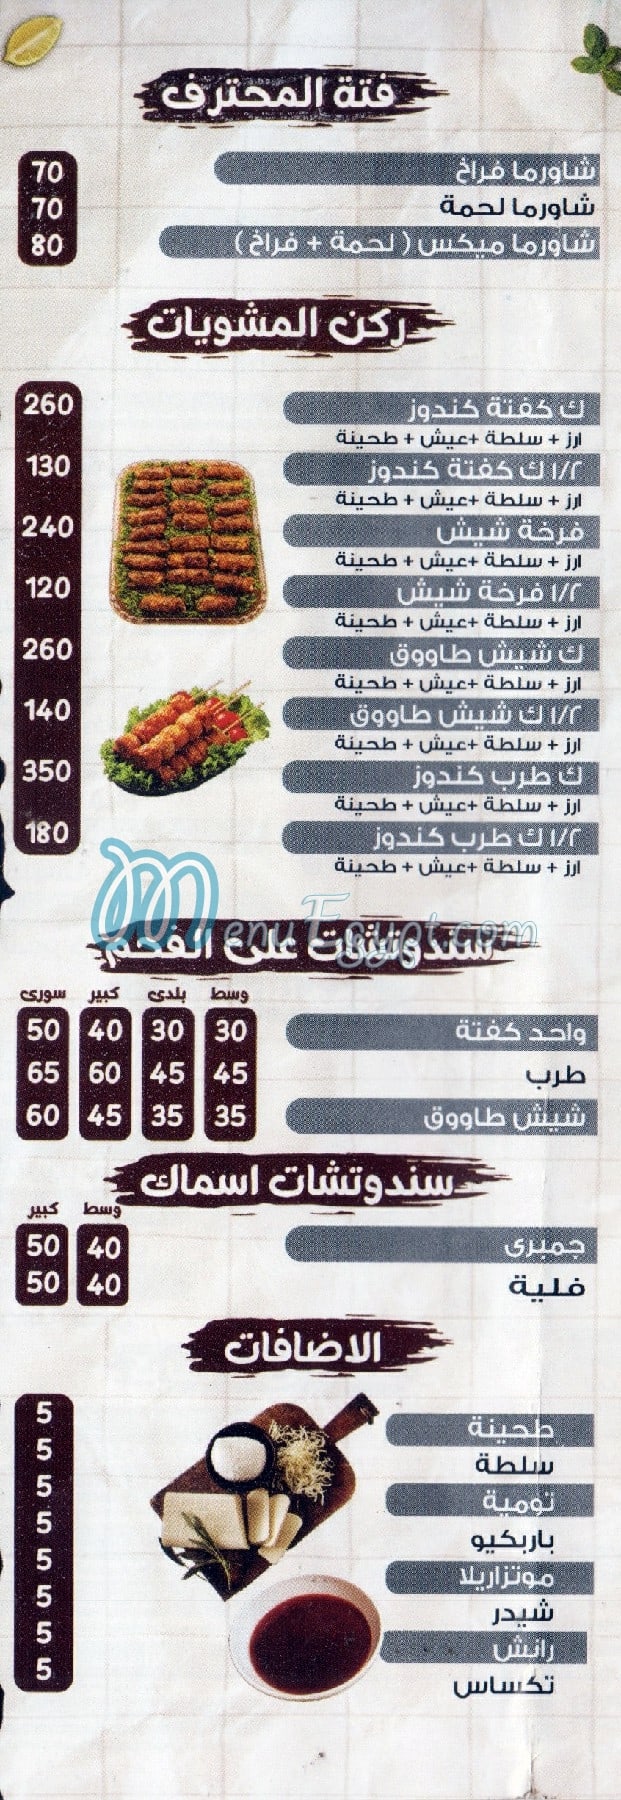 El Mohtaref delivery menu